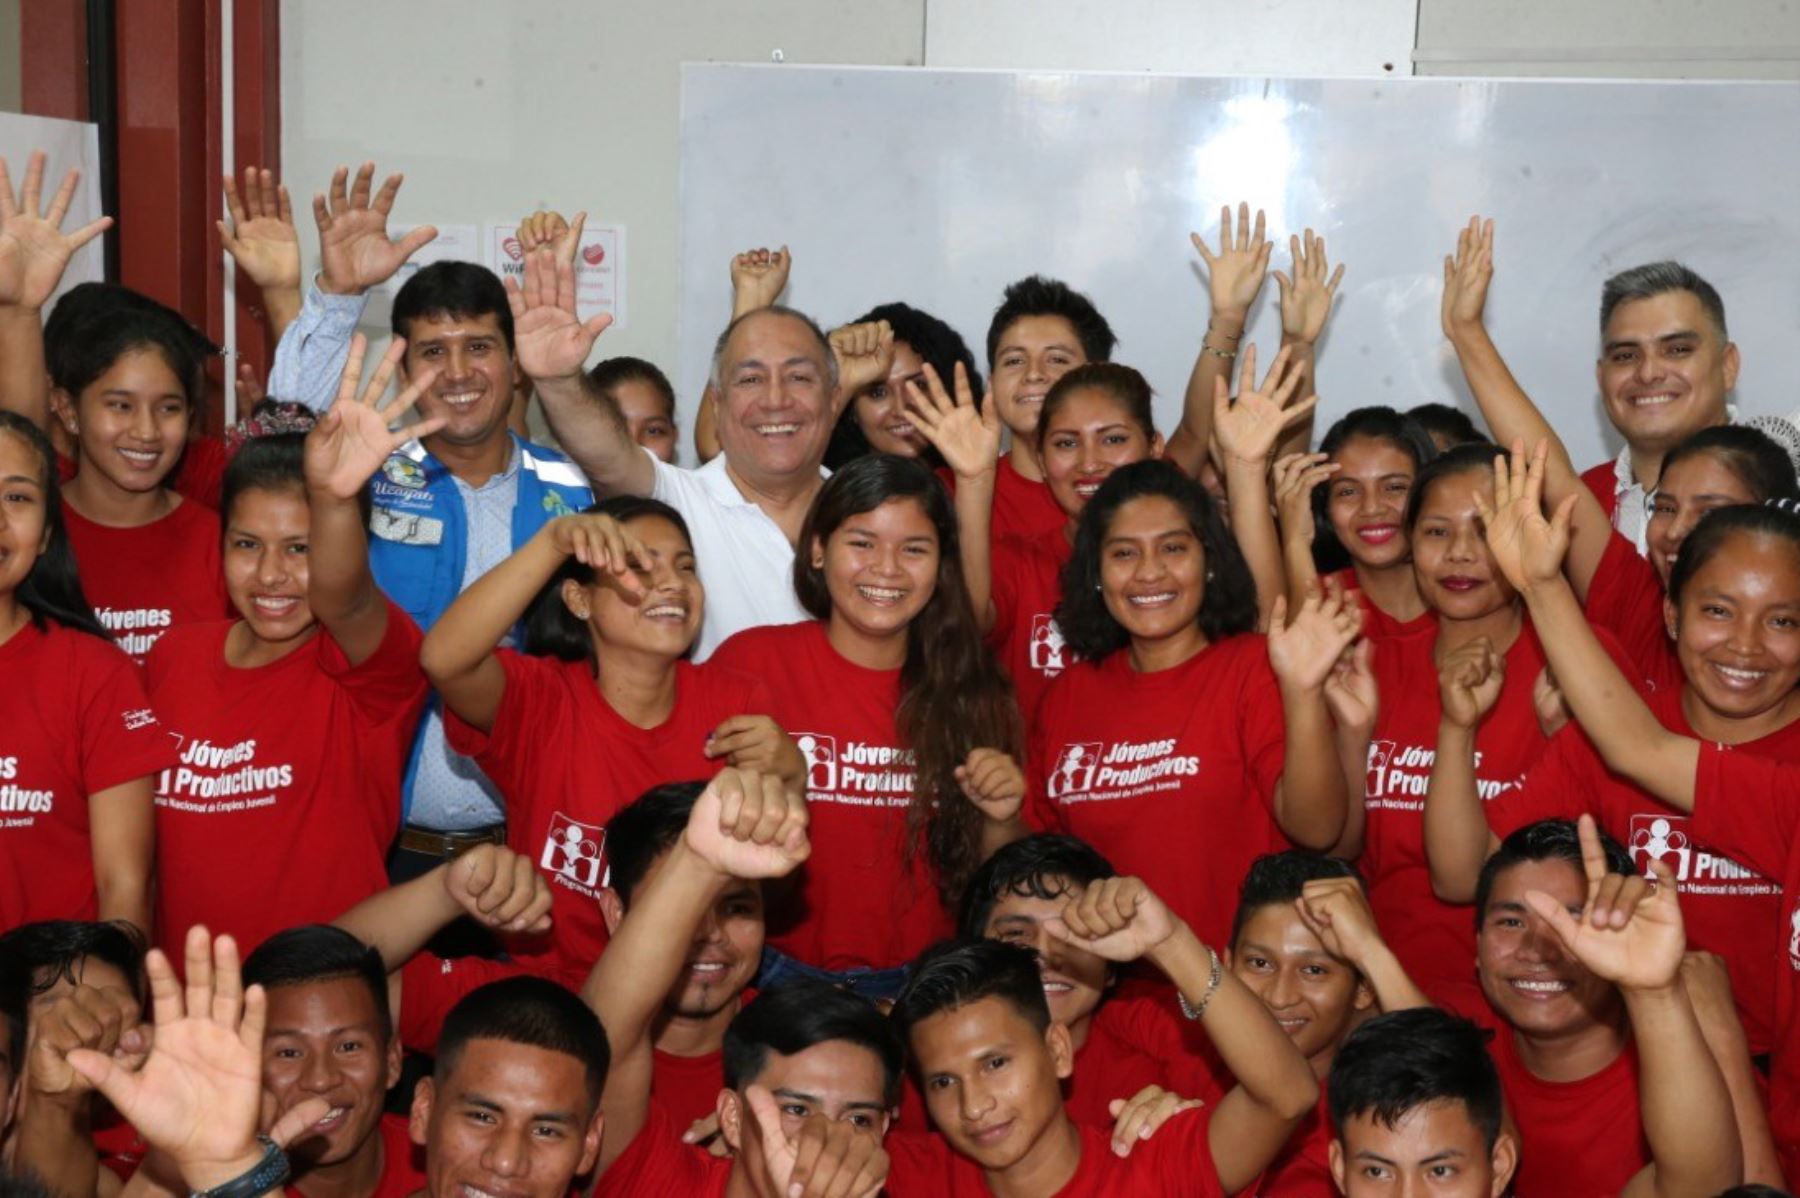 Jóvenes Productivos de Ucayali recibieron visita de viceministro de Promoción del Empleo, Javier Palacios Gallegos.